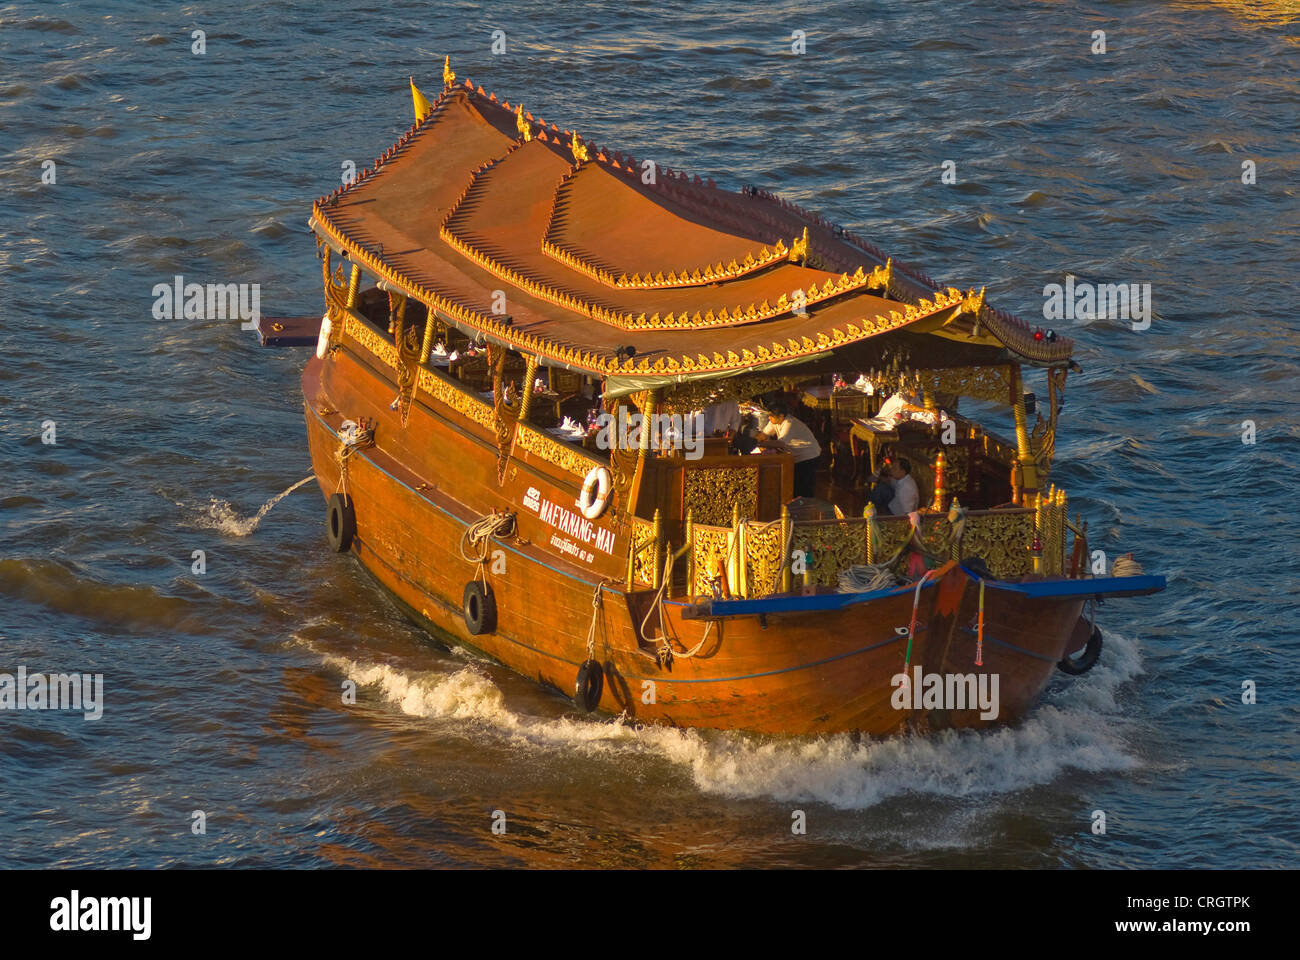 junk as excursion boat on the Chao Praya River, Thailand, Bangkok Stock Photo